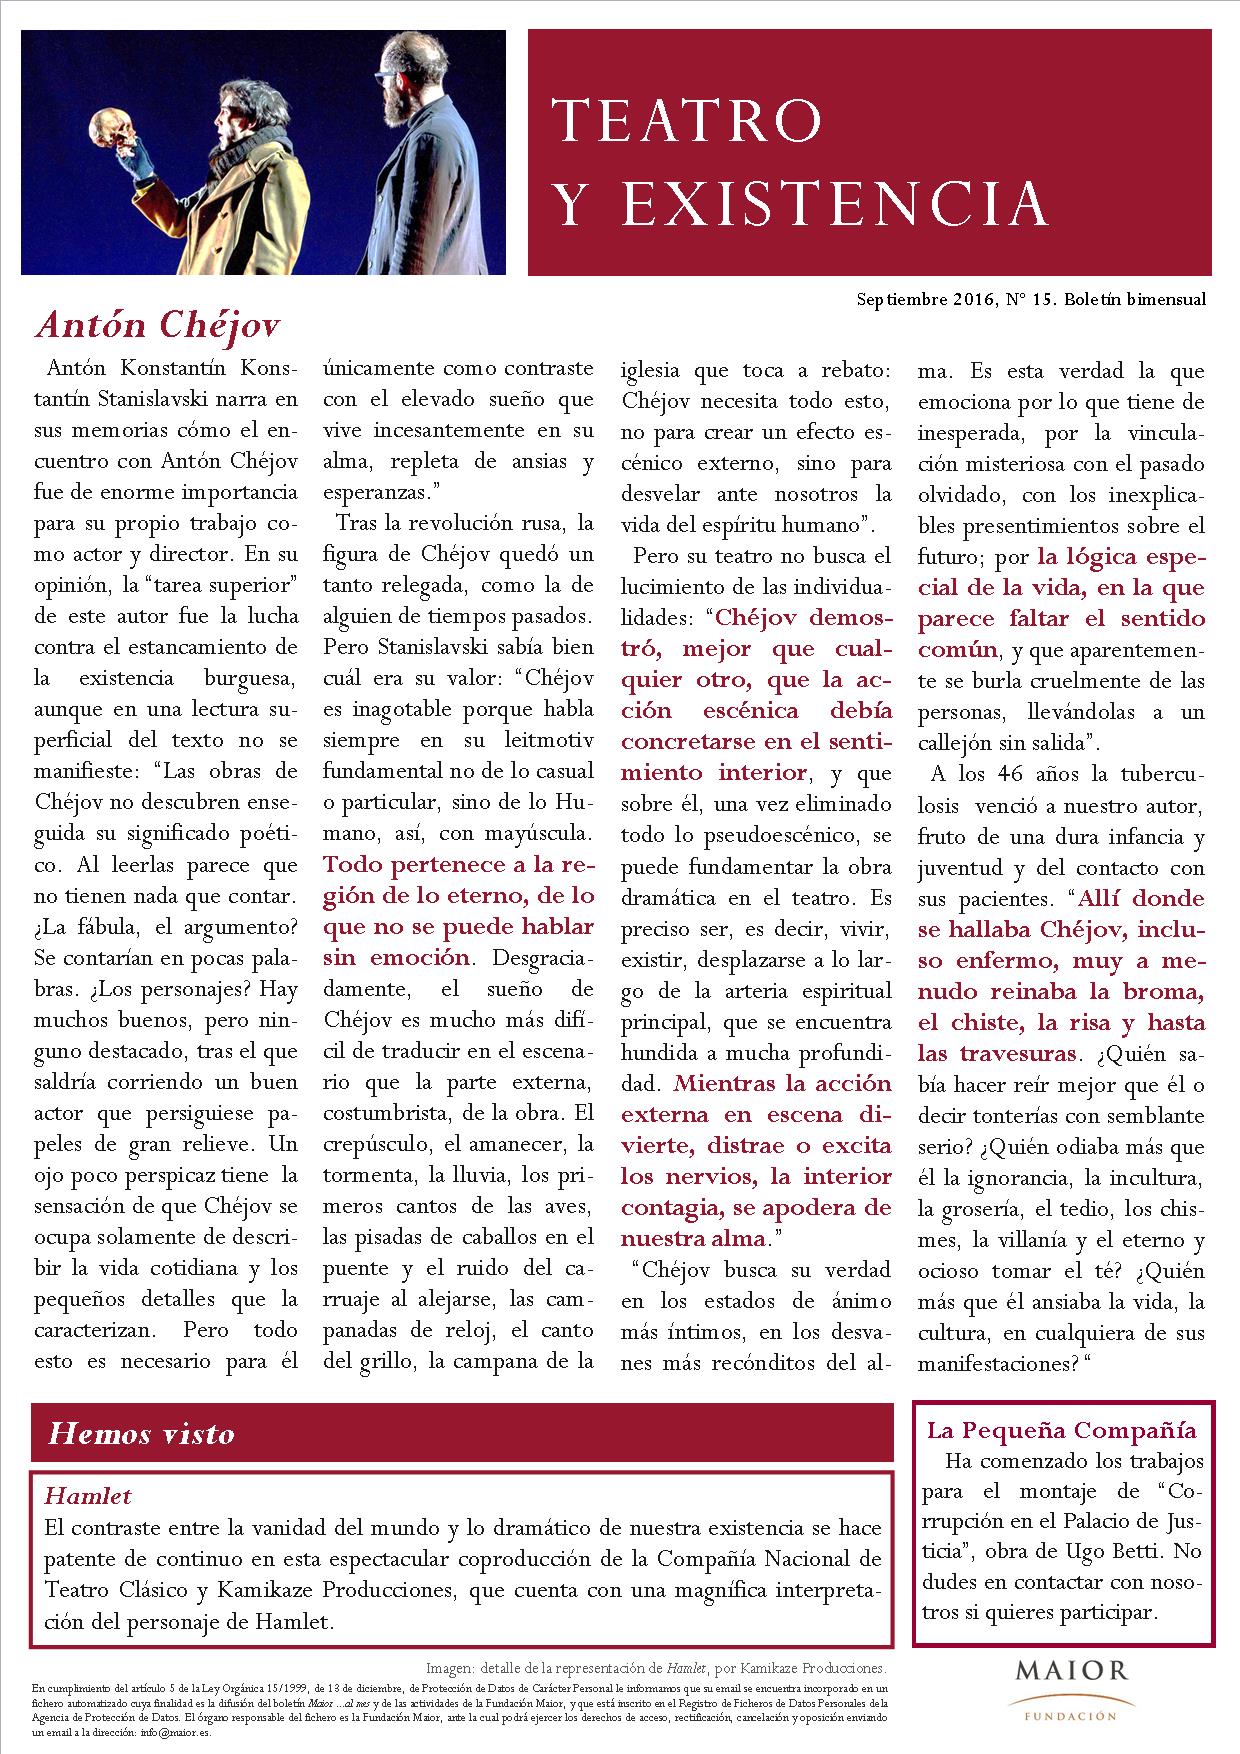  Boletín de Teatro y Existencia de La Pequeña Compañía de la Fundación Maior, con recomendaciones de la cartelera. Edición de Septiembre 2016